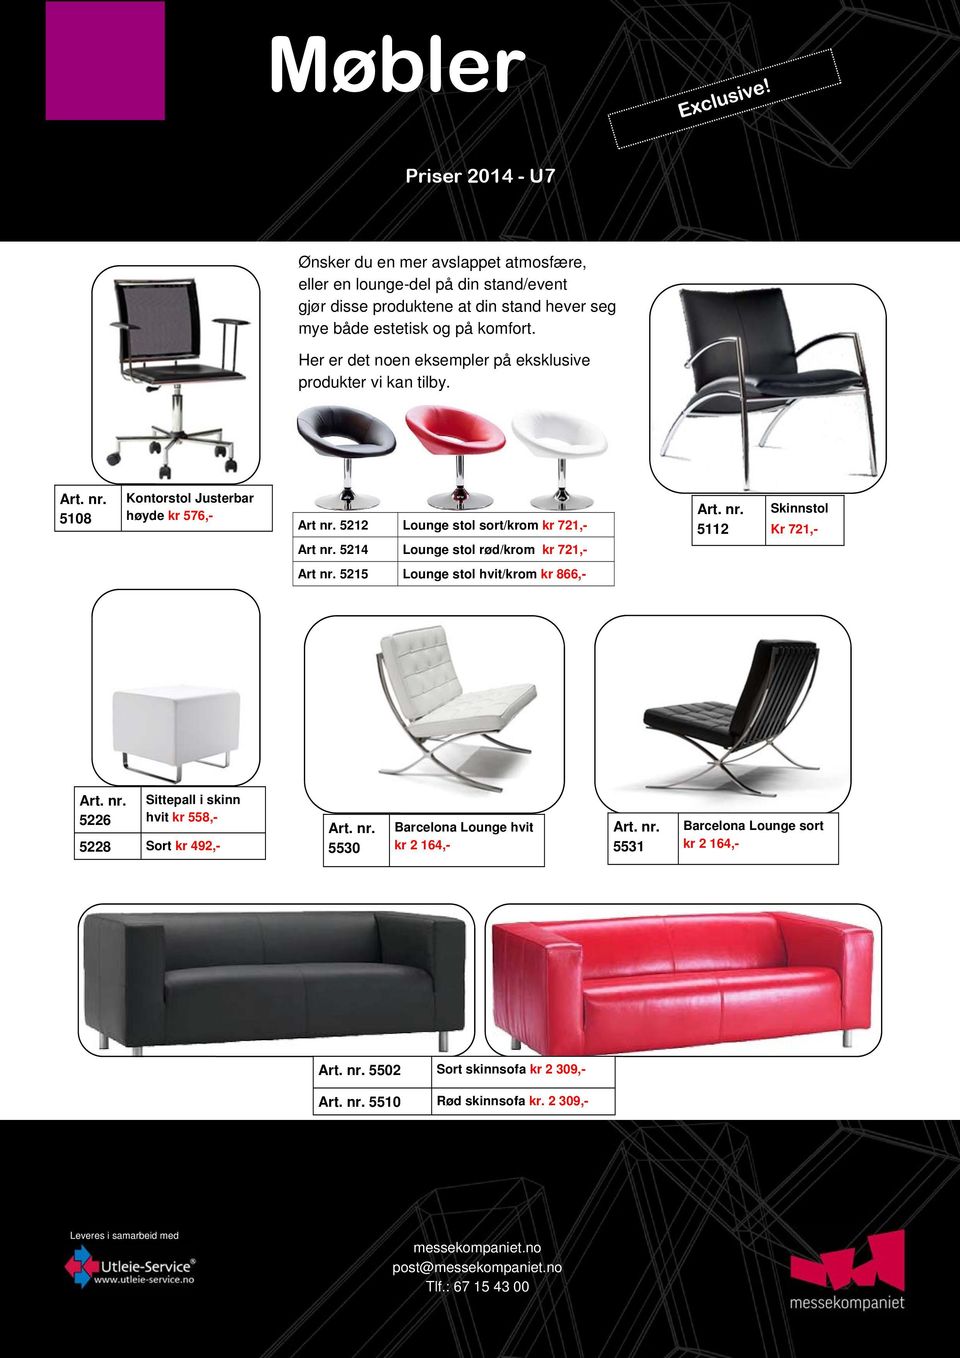 5212 Lounge stol sort/krom kr 721,- Art nr. 5214 Lounge stol rød/krom kr 721,- 5112 Skinnstol Kr 721,- Art nr.